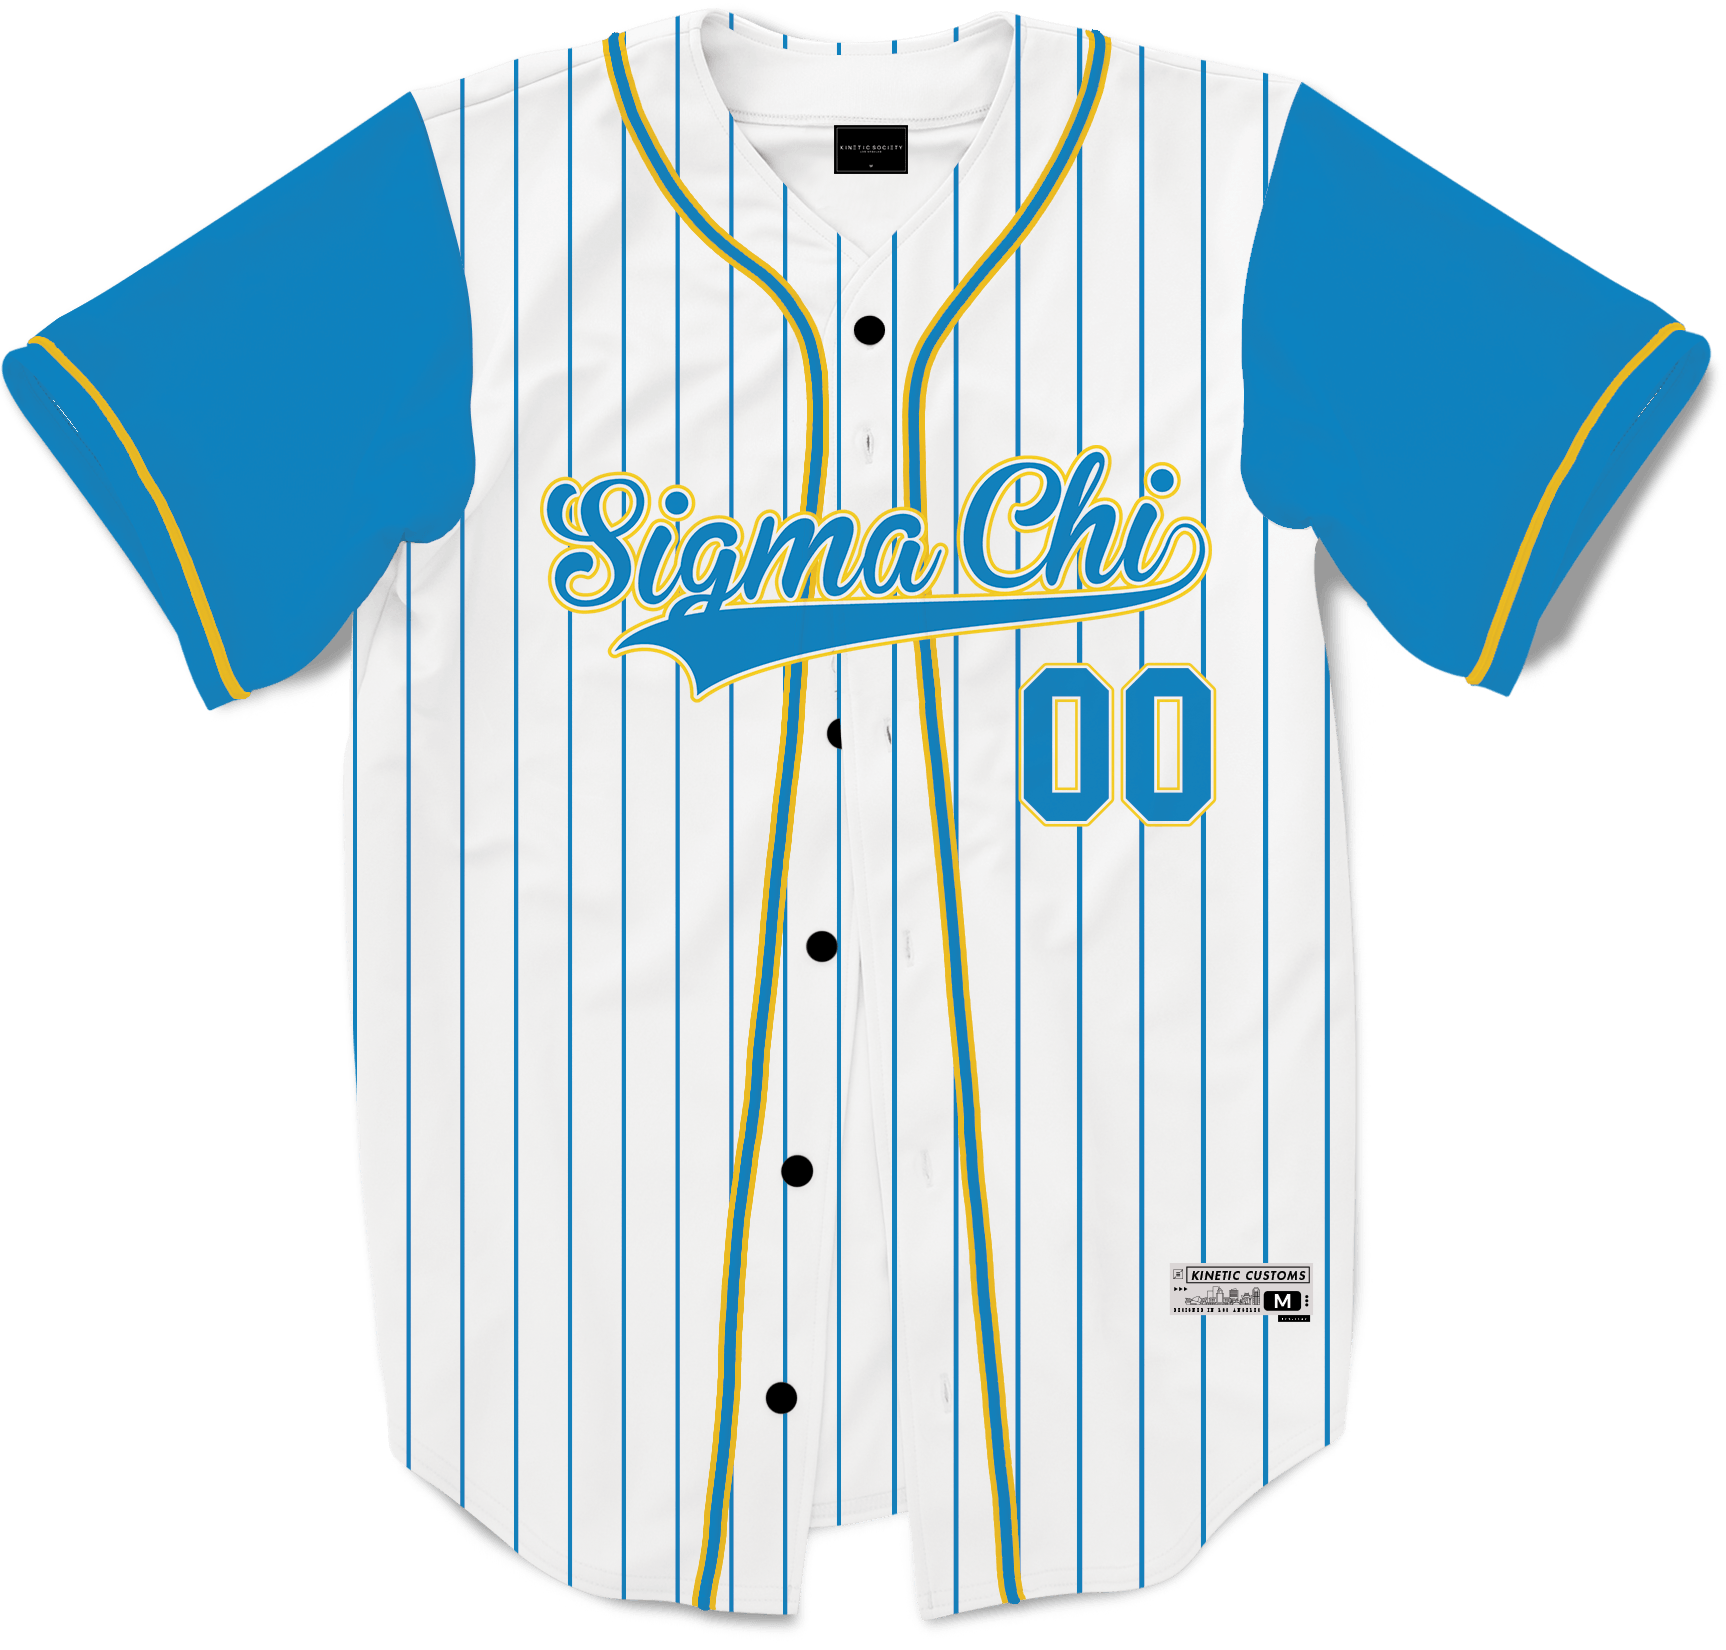 baseball jersey outline